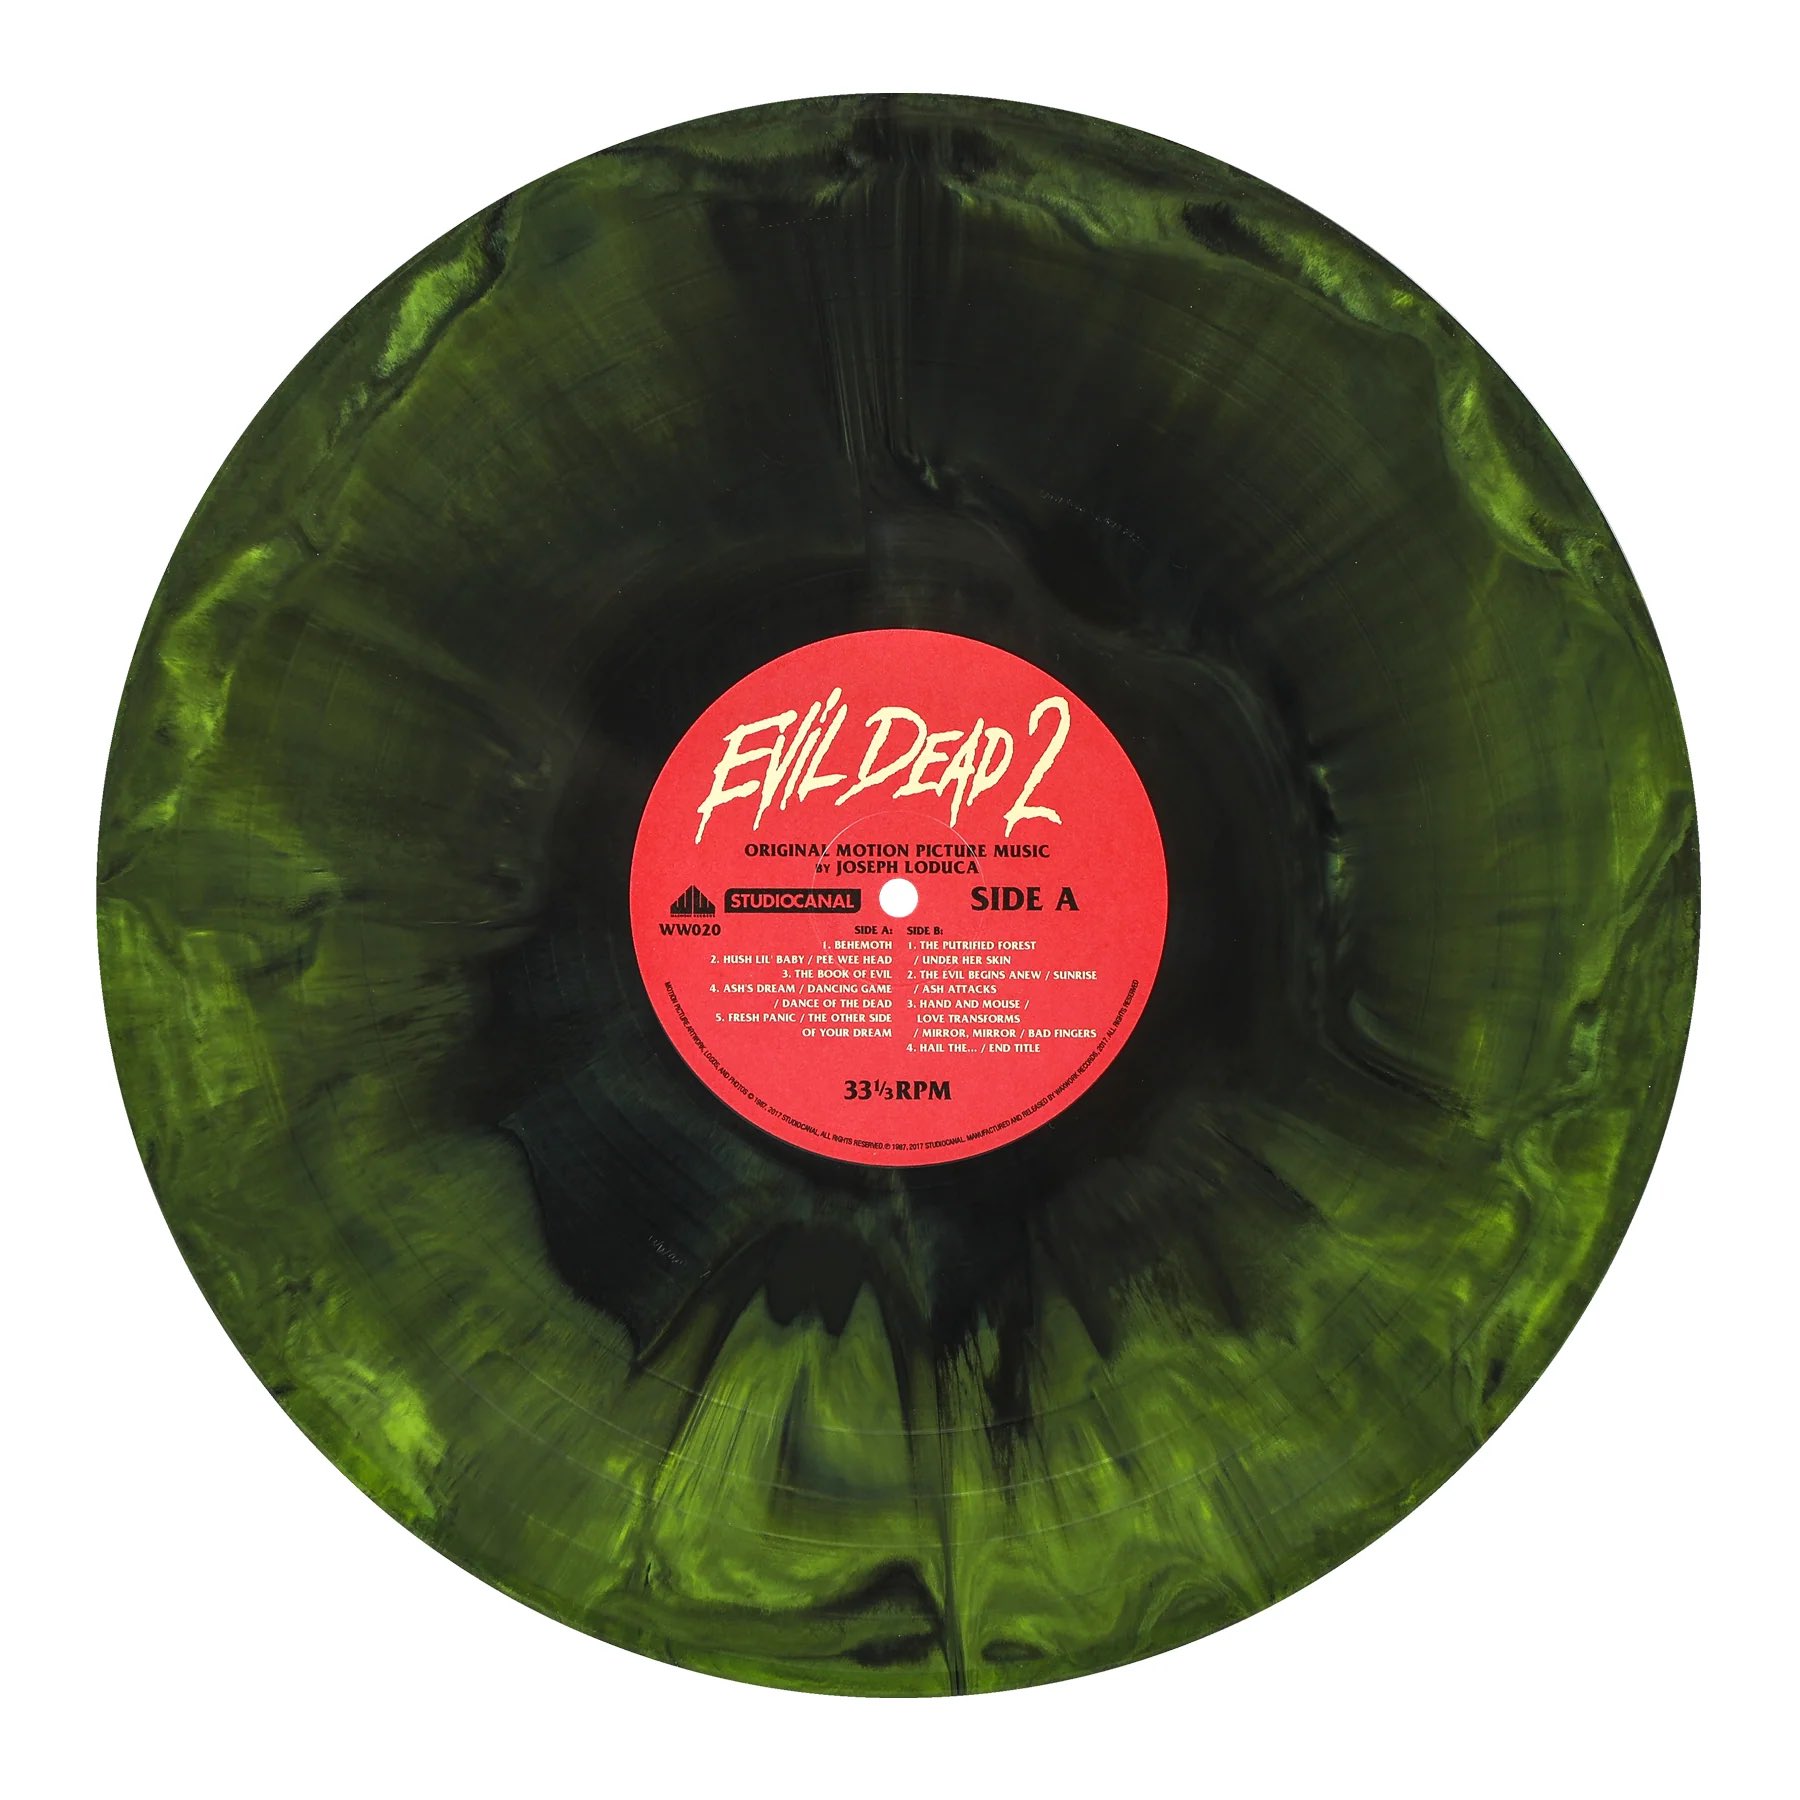 EAN : 0850053152719 - Evil Dead 2 | Vinyle Coloré